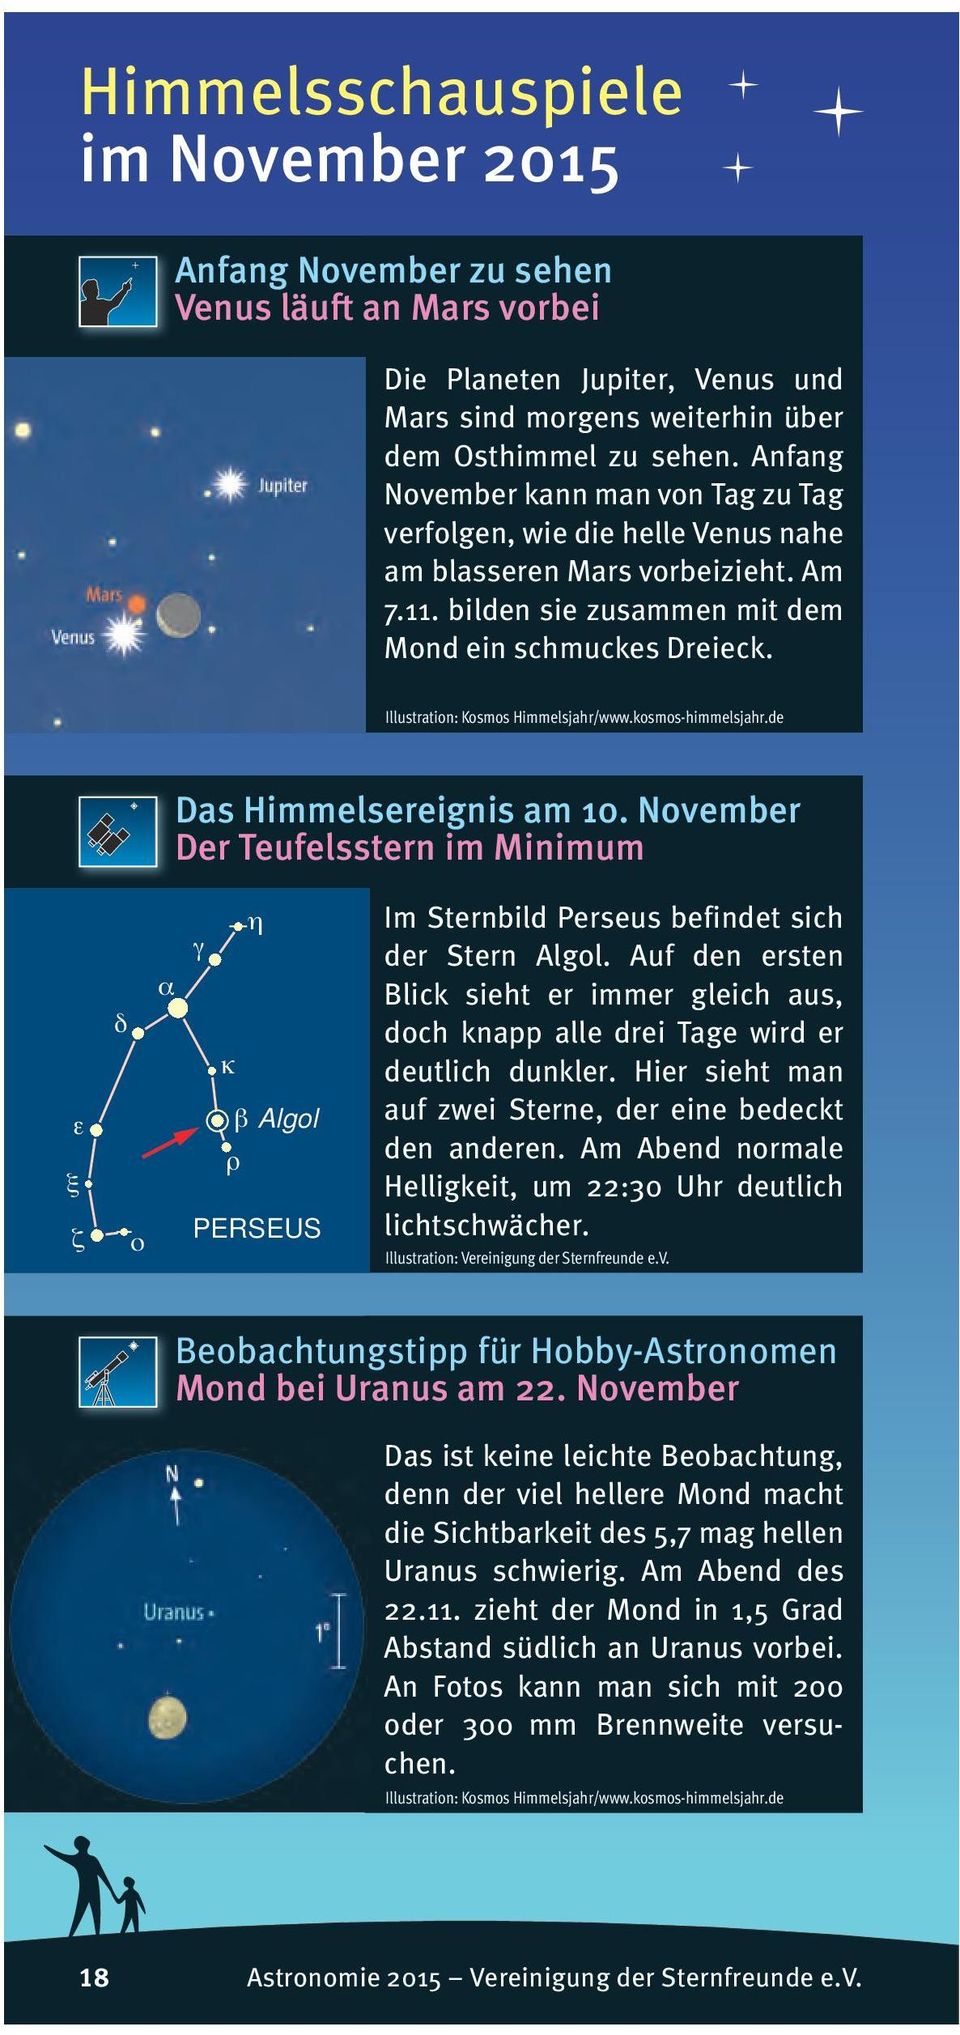 November Der Teufelsstern im Minimum ε ξ ζ δ ο α η γ κ β Algol ρ PERSEUS Im Sternbild Perseus befindet sich der Stern Algol.